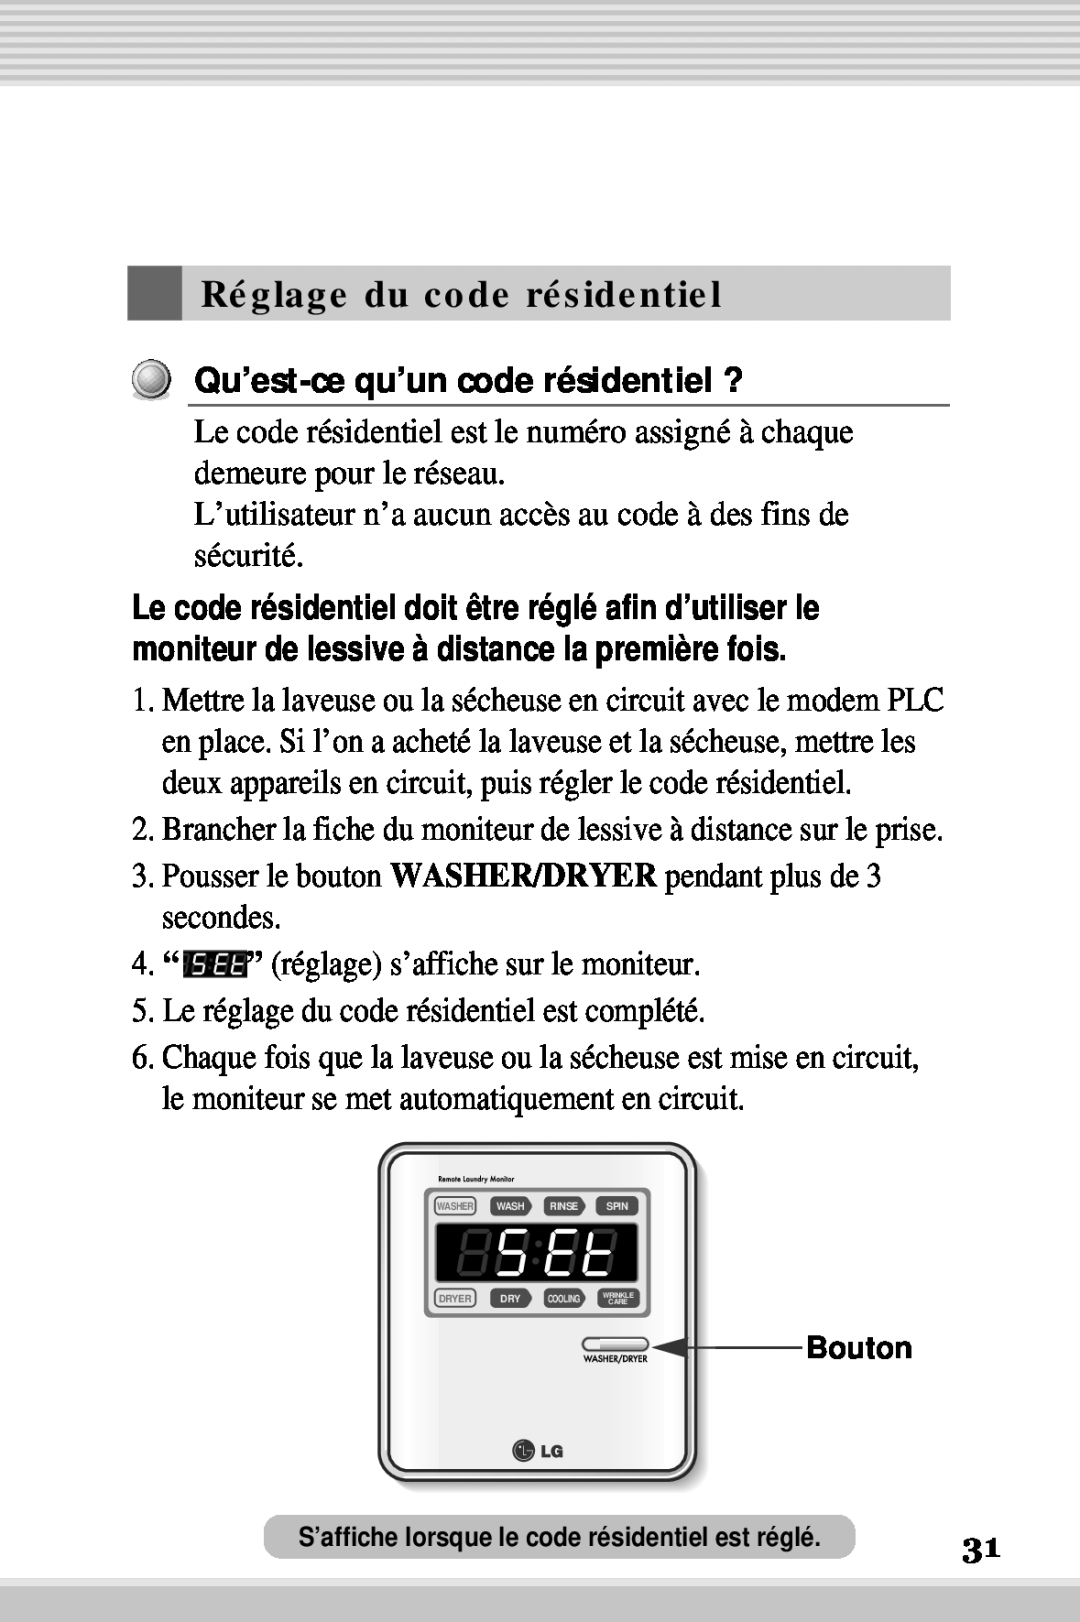 LG Electronics RLM10 Réglage du code résidentiel, L’utilisateur n’a aucun accès au code à des fins de sécurité, secondes 